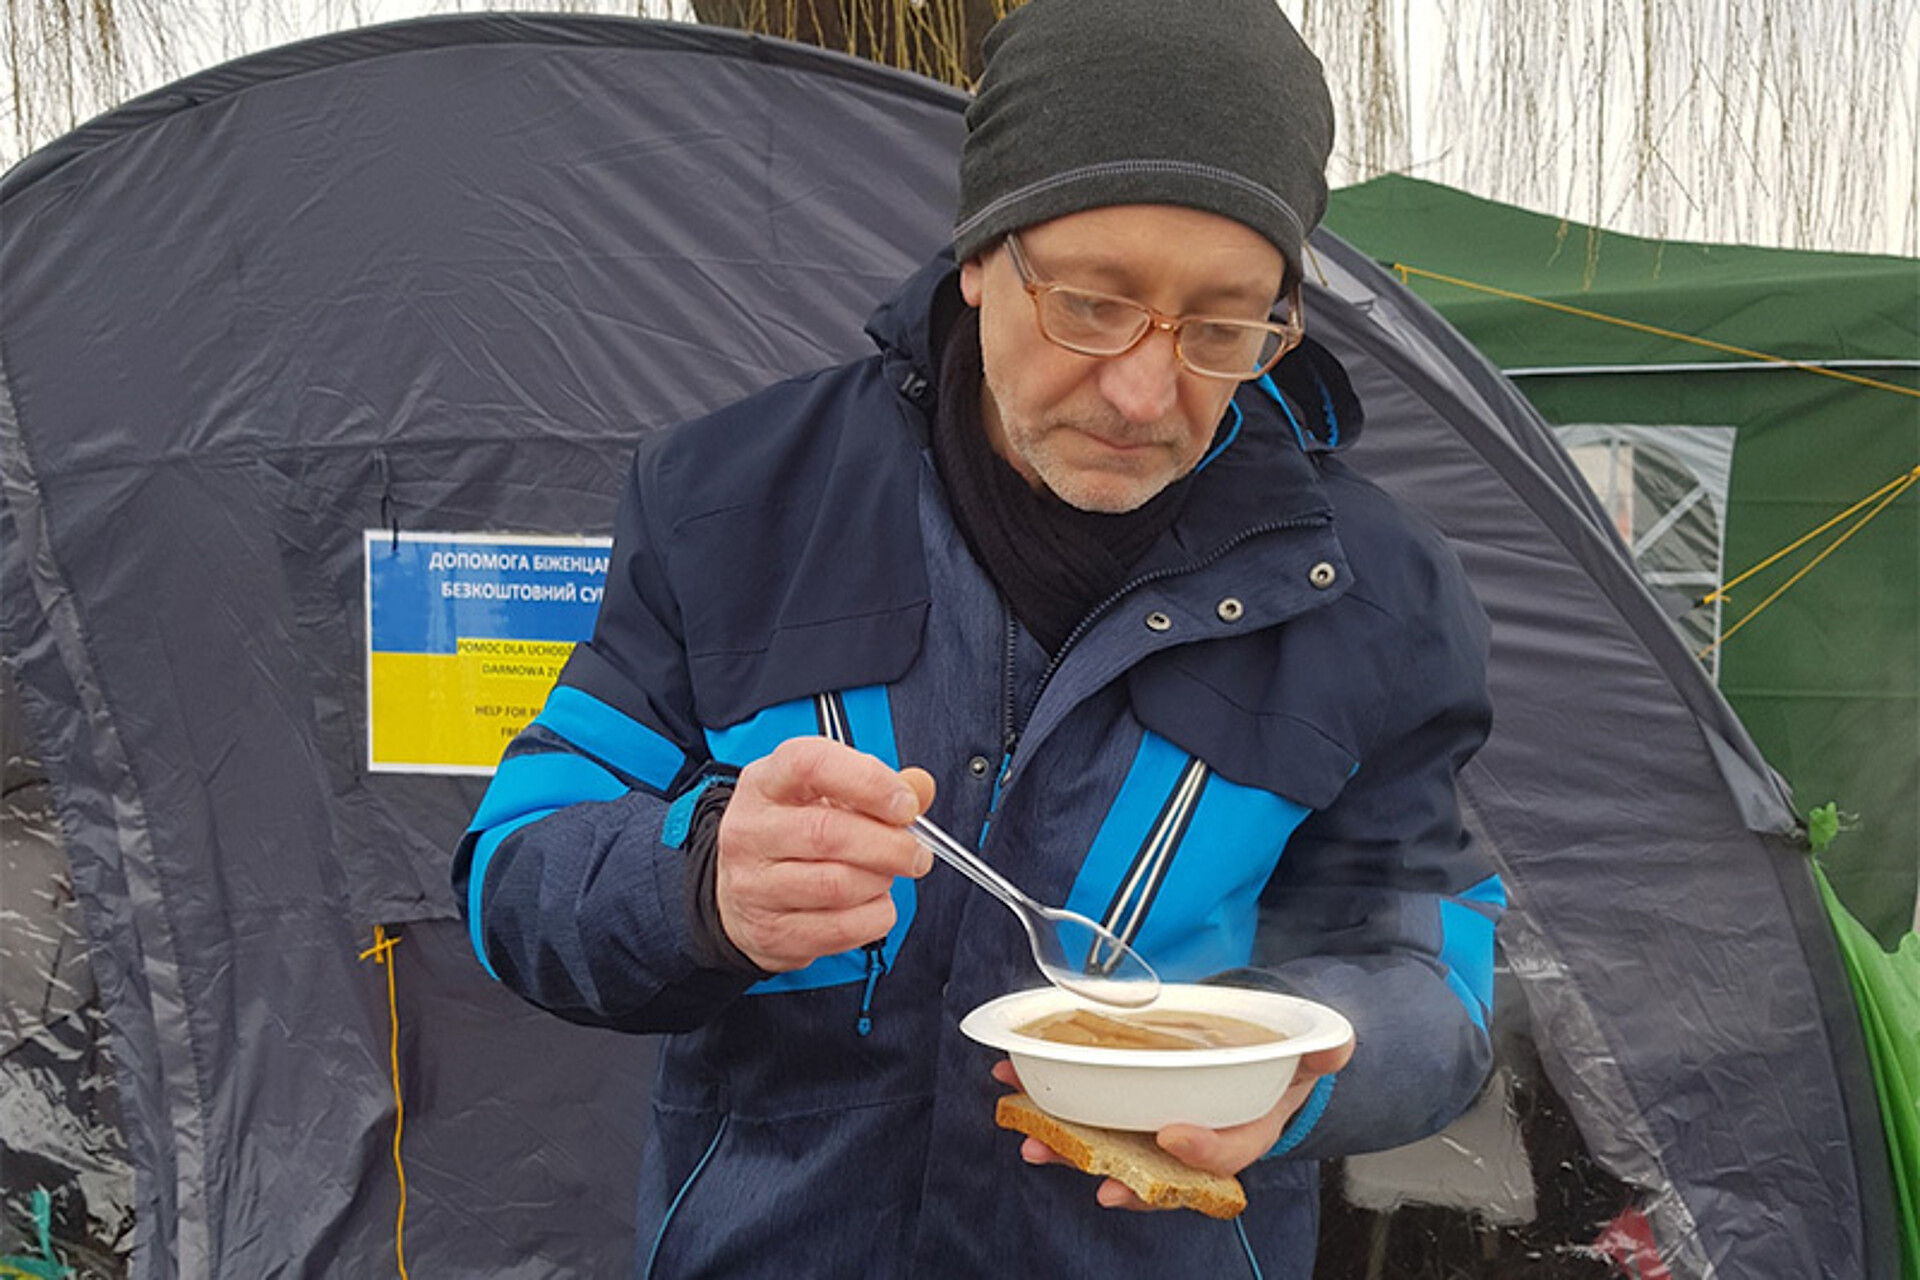 Dimitri Becker bei einer Pause mit einem Suppenteller in der Hand